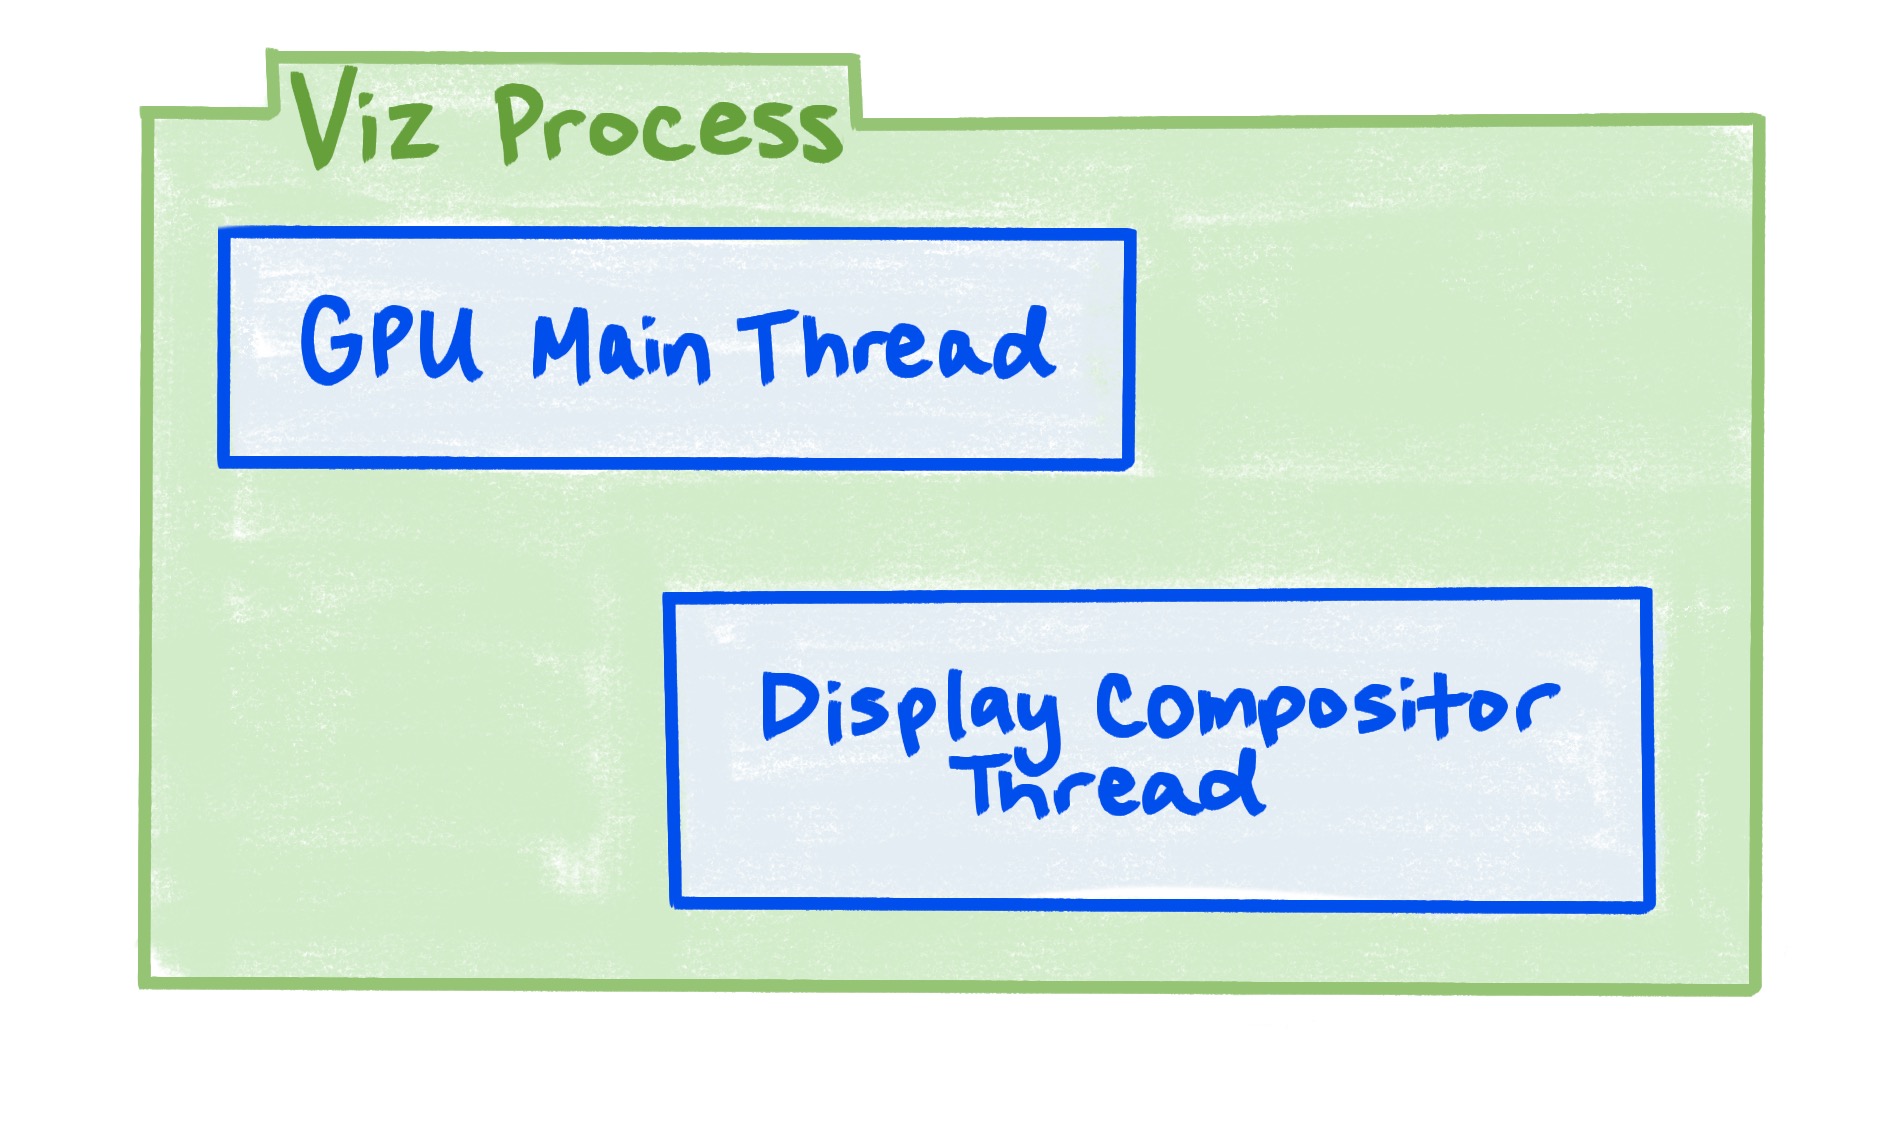 Het Viz-proces omvat de GPU-hoofdthread en de displaycompositor-thread.